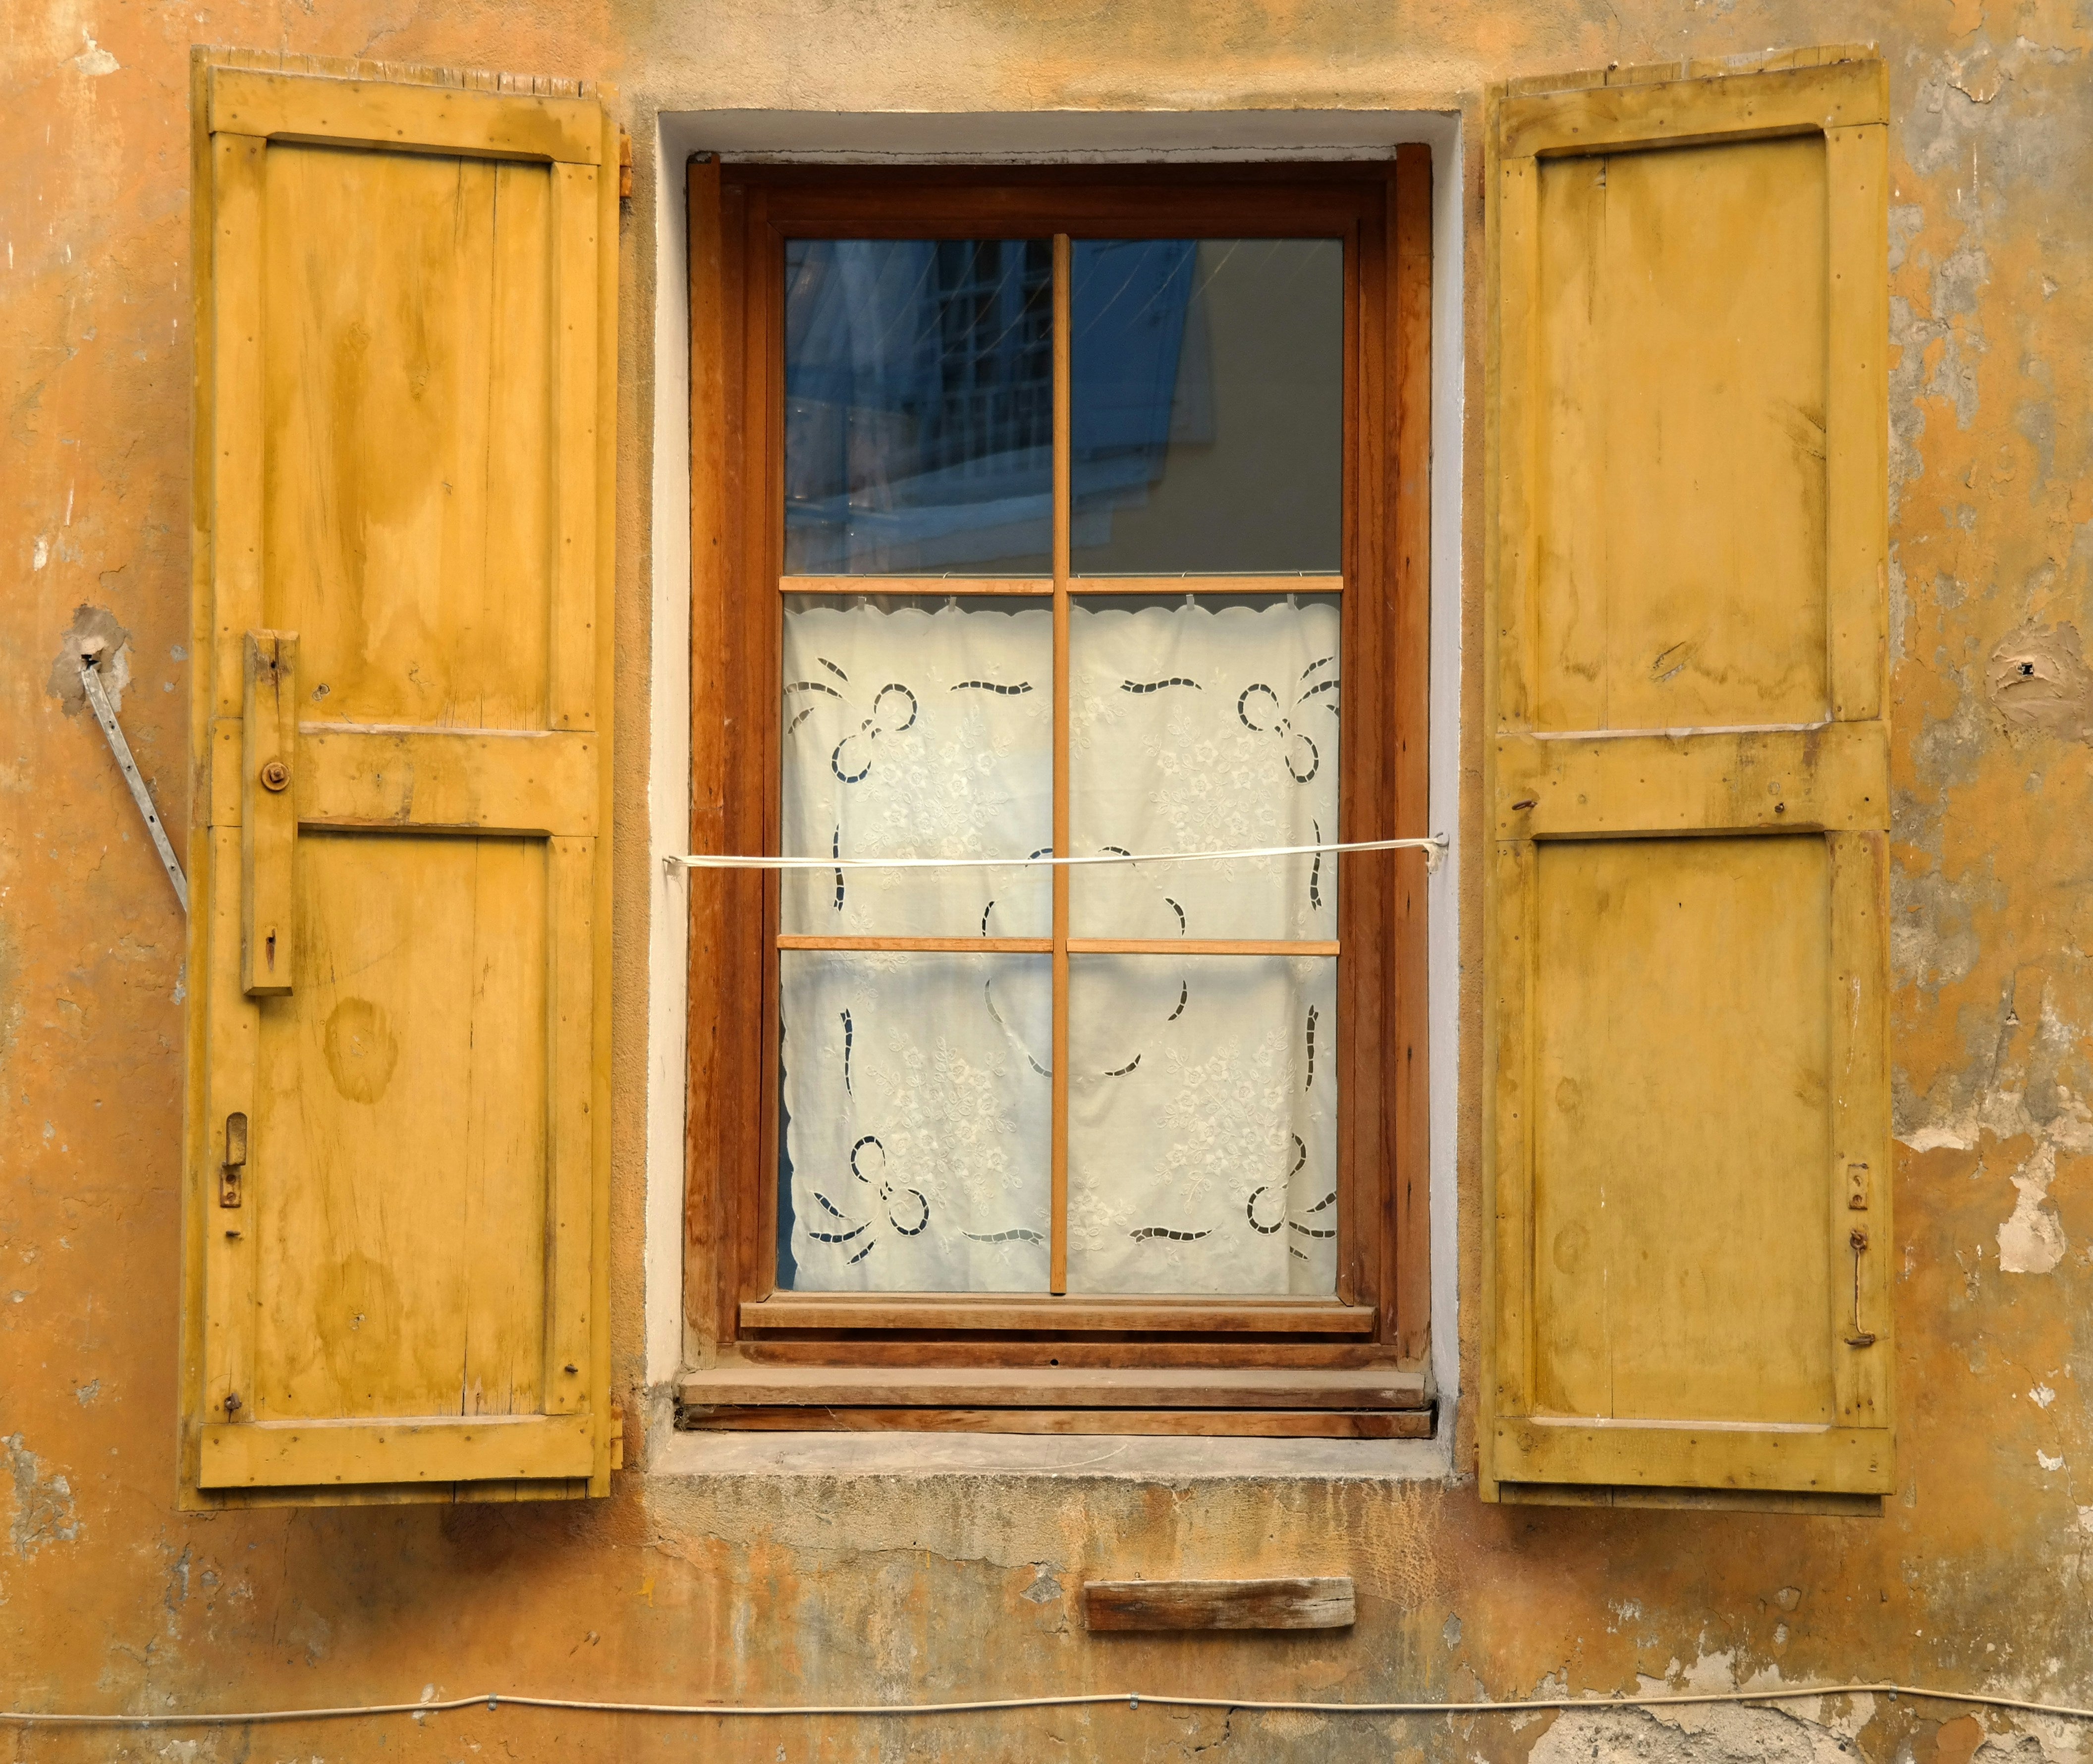 Sicht- und Sonnenschutz in einem: Erfahren Sie mehr über reflektierende Fensterfolien